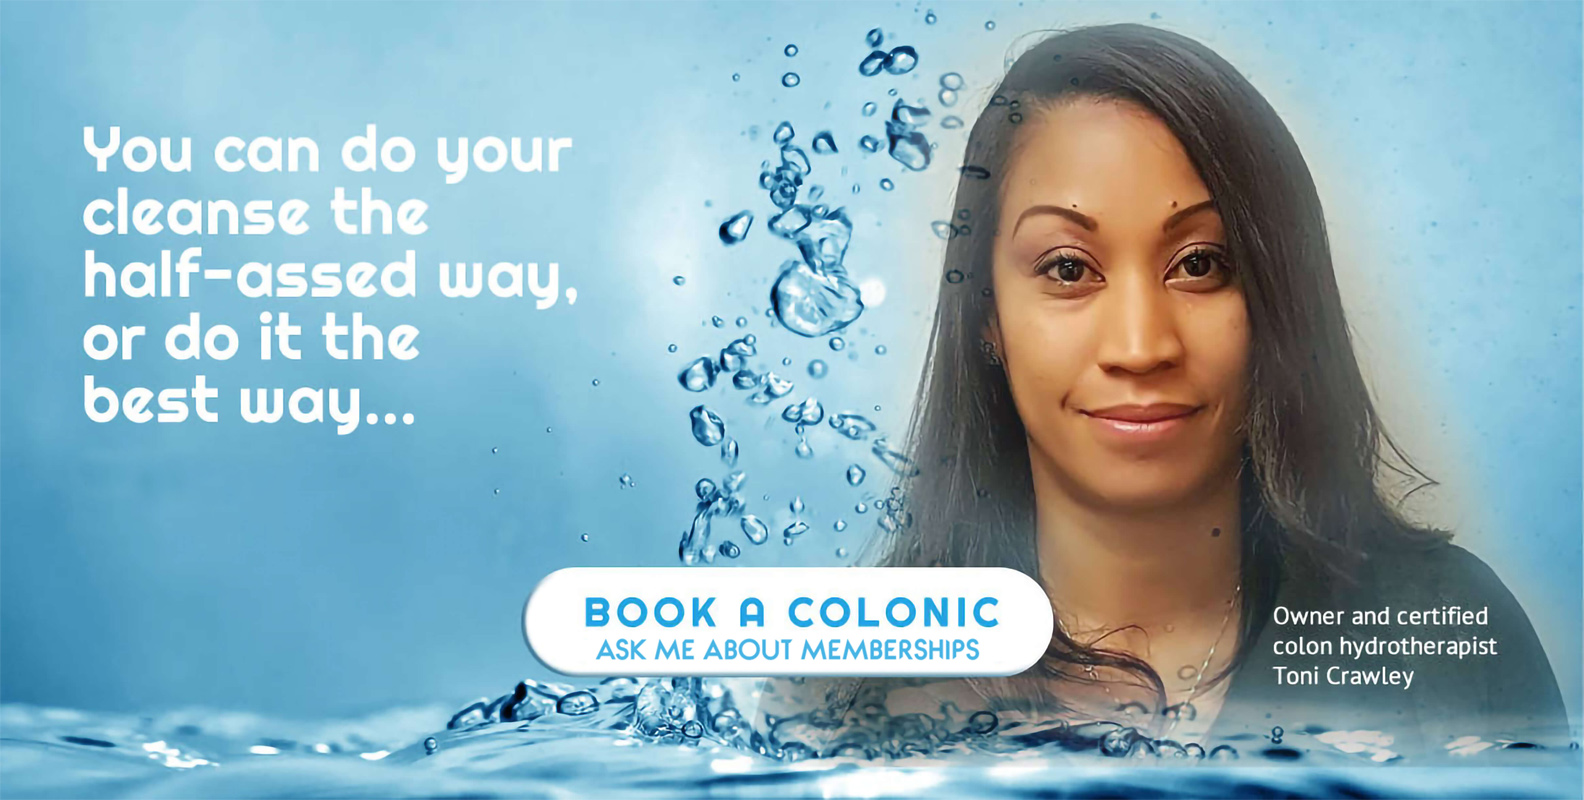 Book a Colonic at Aqualavage.com